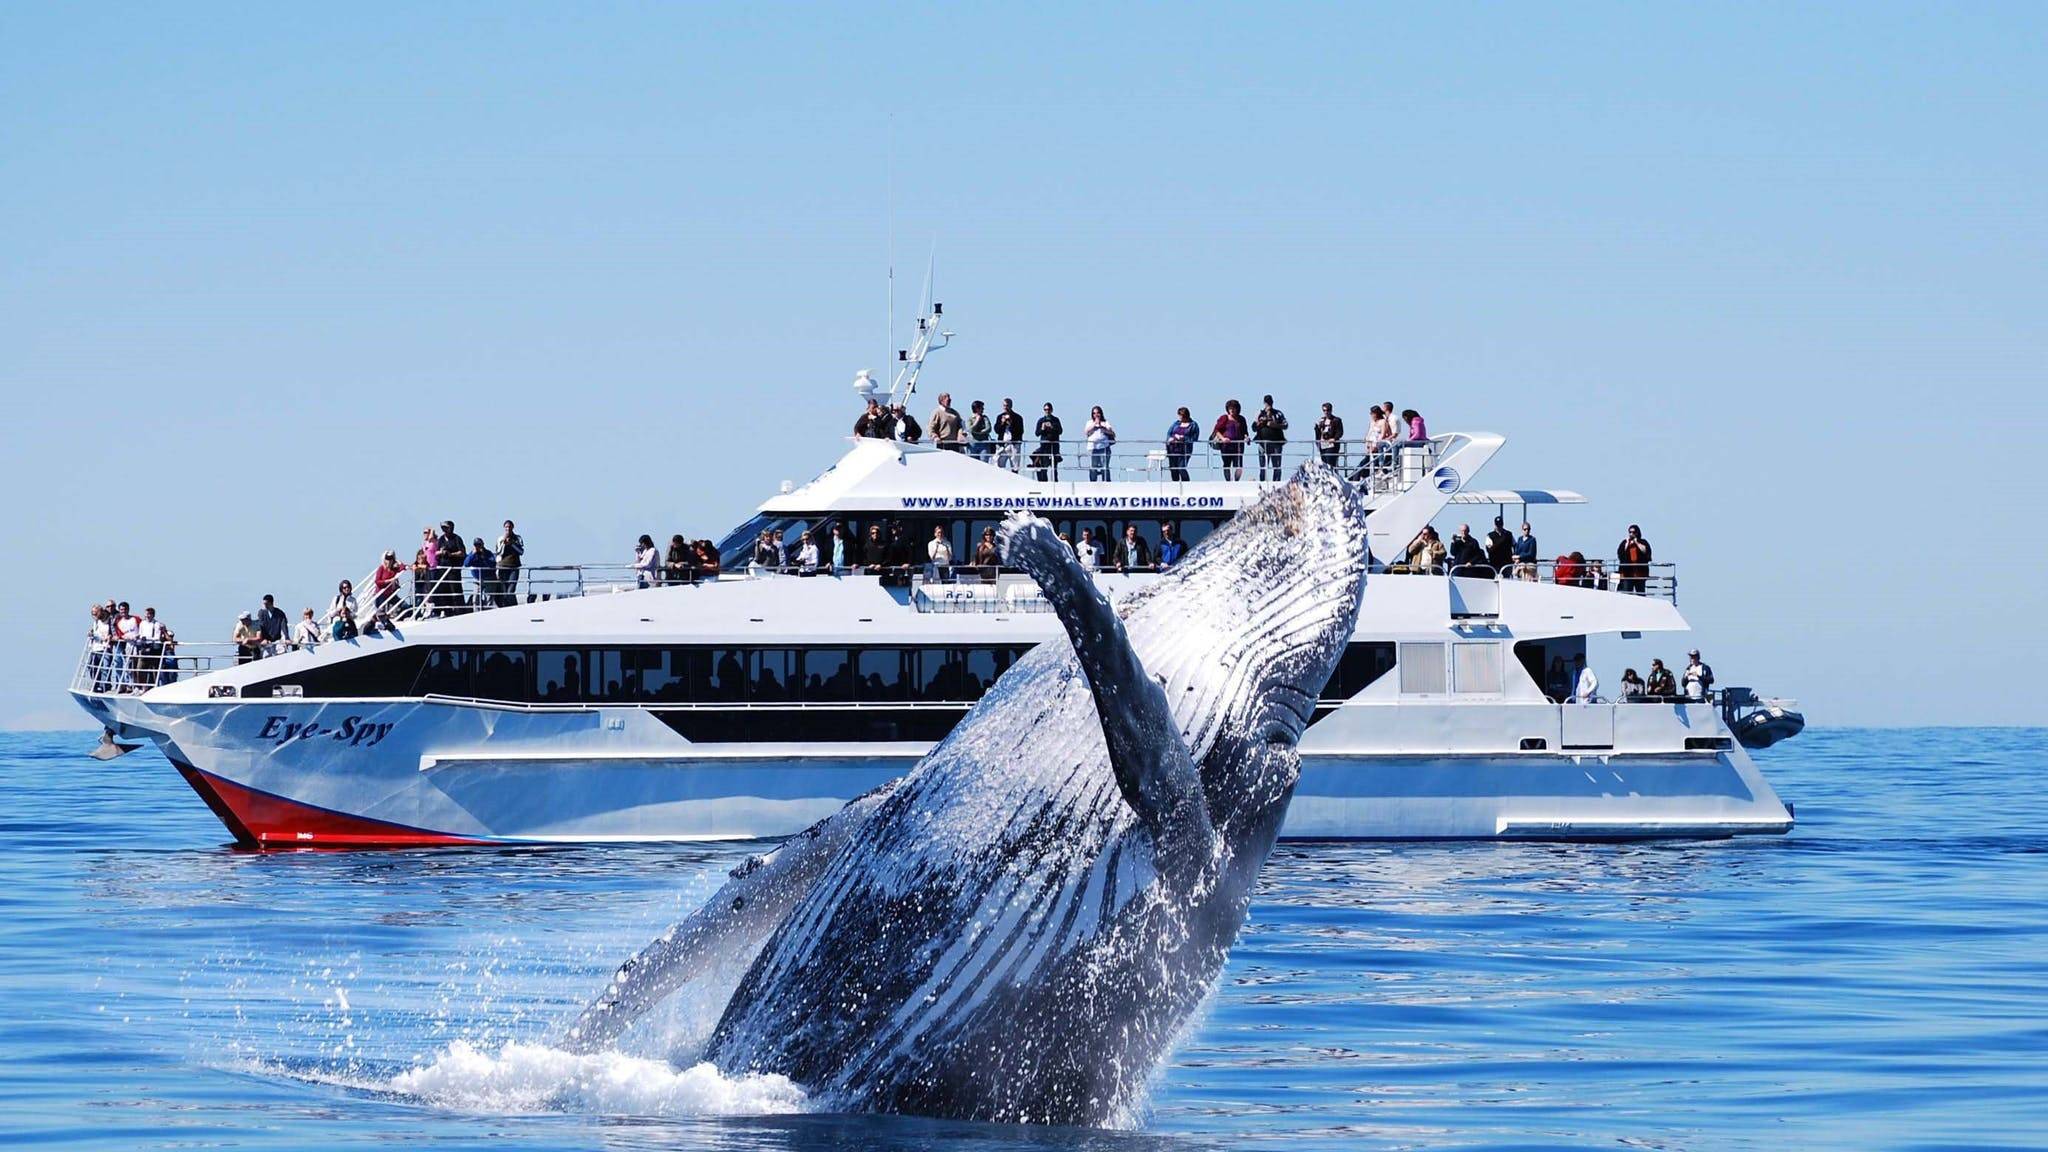 Las ballenas son una de las criaturas más grandes y majestuosas del océano. Si eres un amante de la naturaleza y estás buscando una experiencia única en la vida, ver ballenas en su hábitat natural es una oportunidad que no querrás perderte.